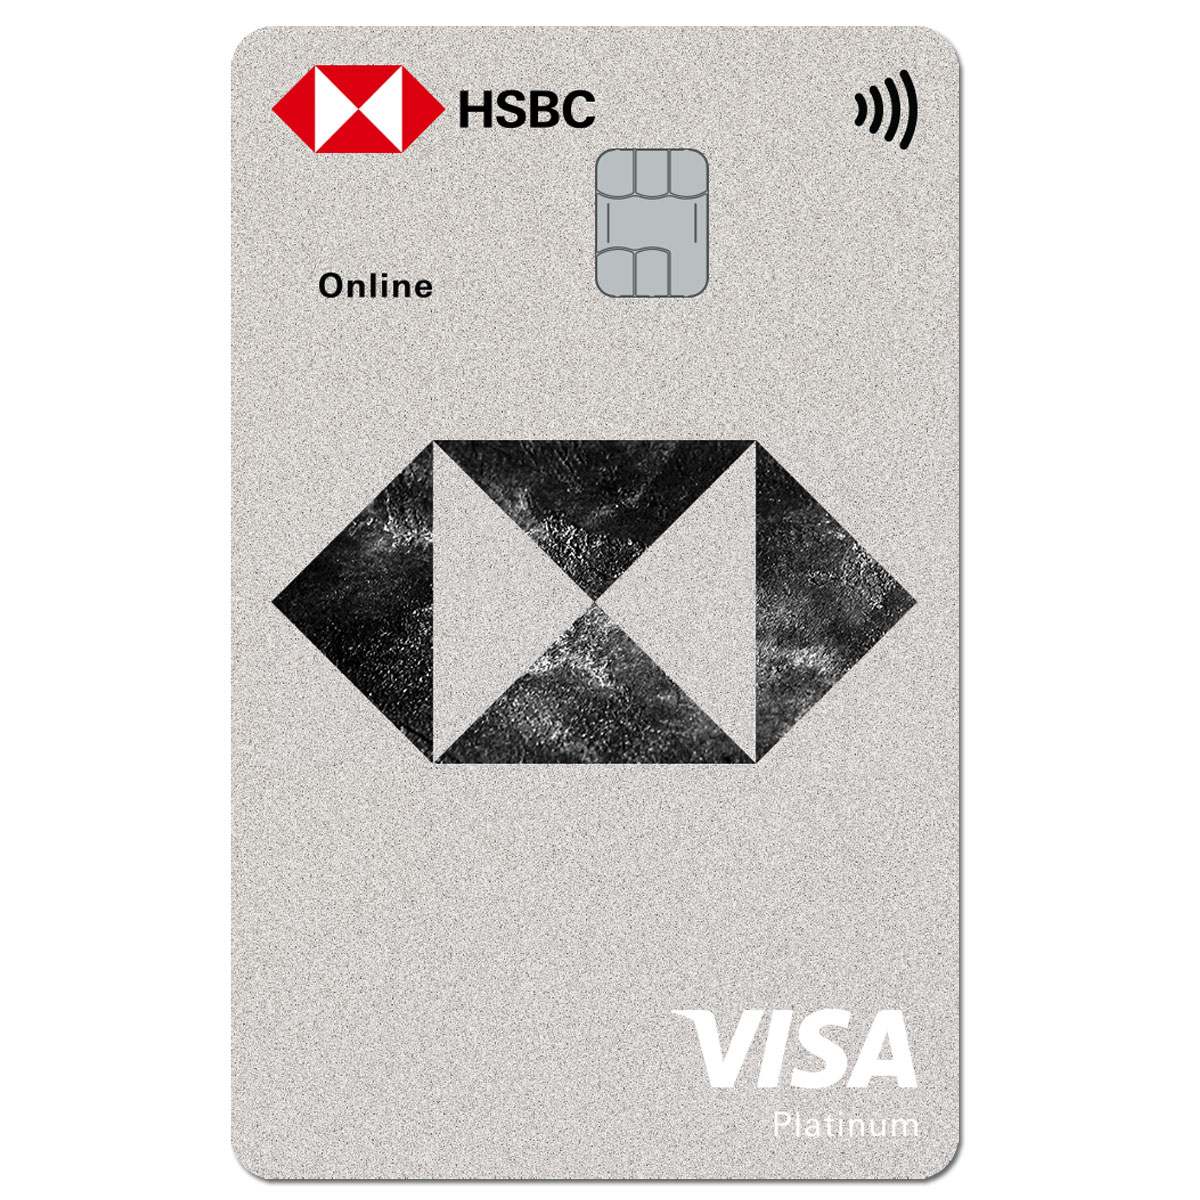 Với thẻ tín dụng HSBC, bạn sẽ được hưởng nhiều ưu đãi hấp dẫn, đặc biệt là chương trình tích điểm giúp quy đổi thành các ưu đãi đặc biệt. Hãy xem ngay hình ảnh liên quan để tìm hiểu thêm về thẻ tín dụng này!